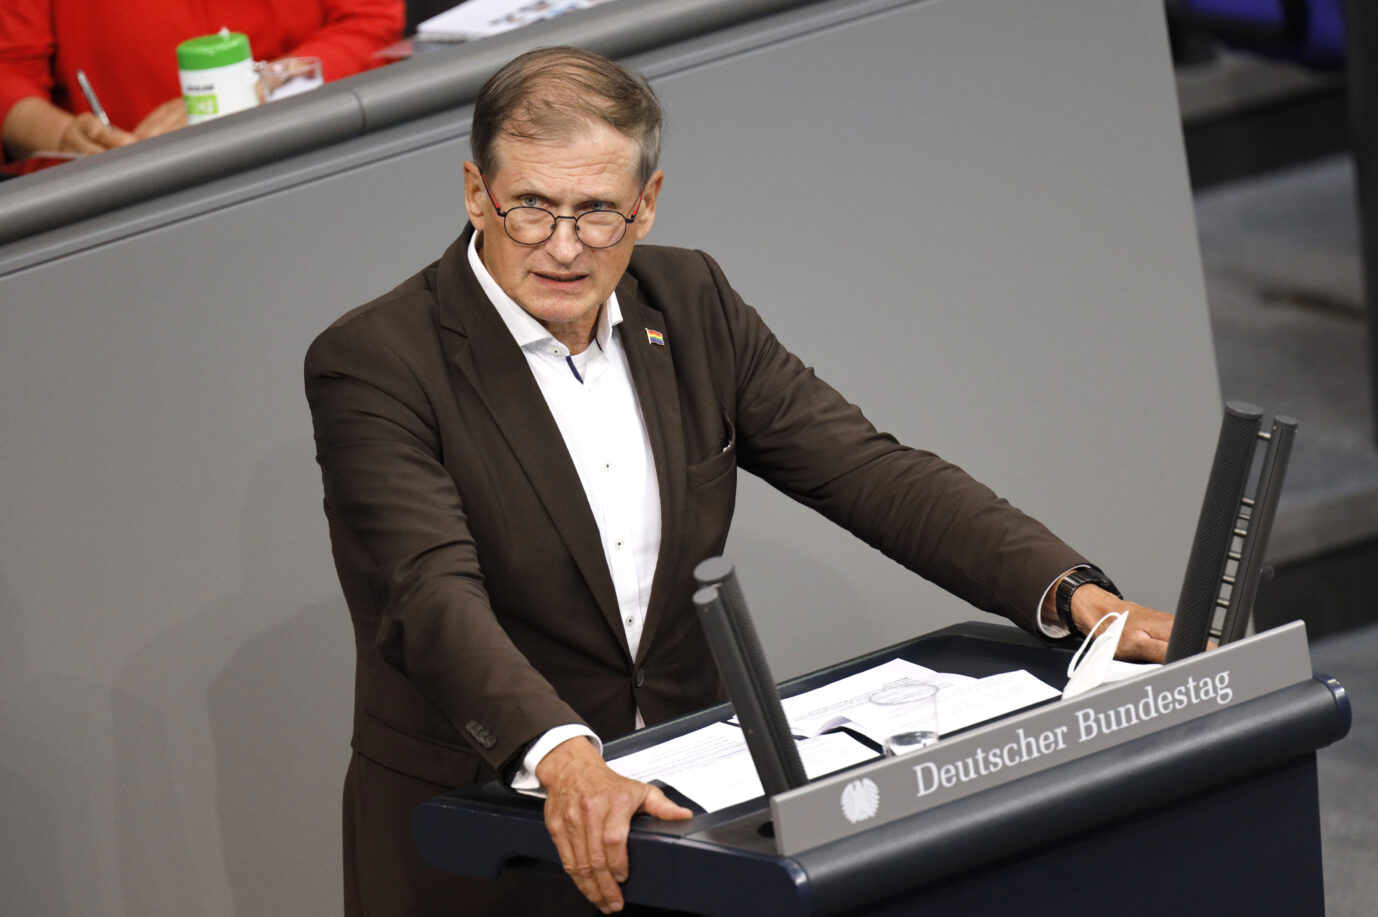 Martin Neumann von der FDP trägt ein dunkles Jackett und ein weißes Hemd, während er am Rednerpult im Bundestag steht. Zuletzt hatte die Netzagentur eine Äußerung von ihm kritisiert.